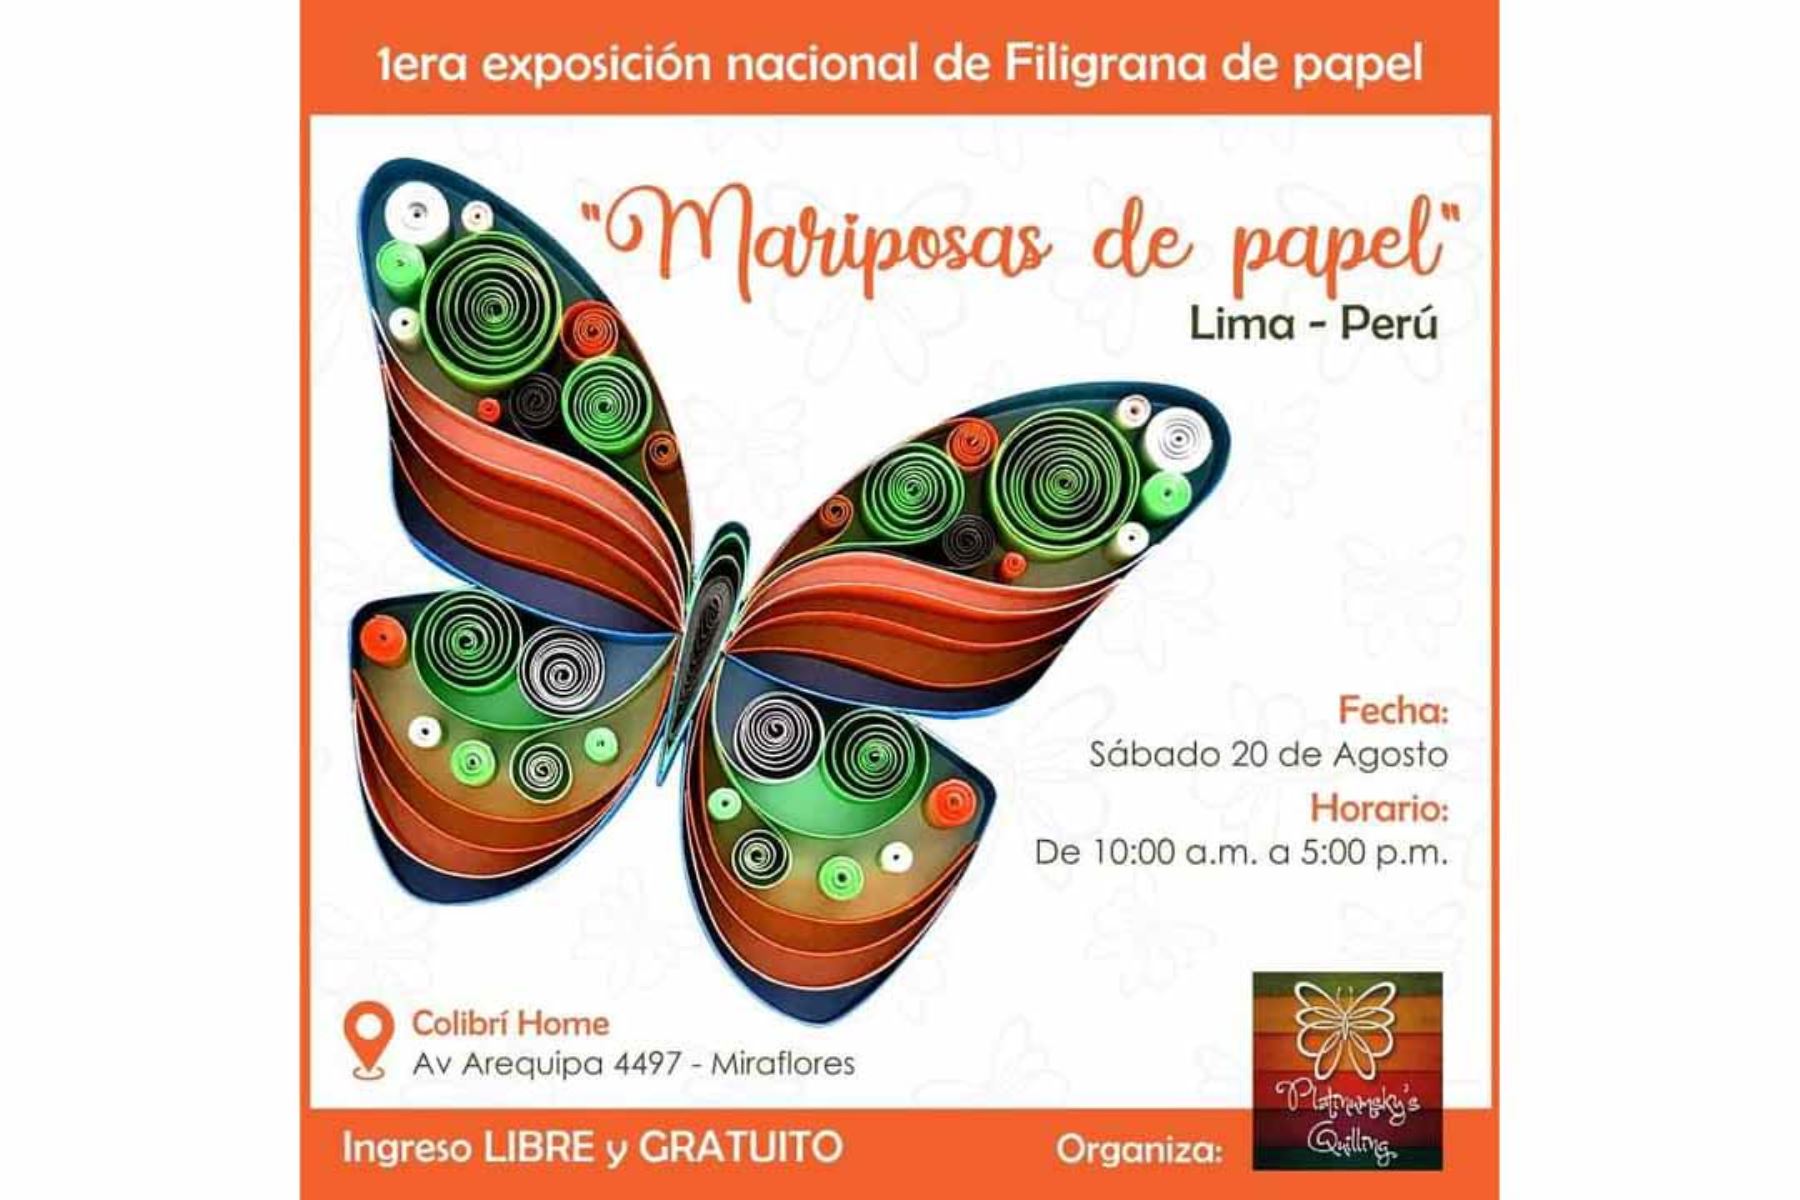 El ingreso a la exposición “Mariposas de papel” es gratuito y estará disponible, únicamente, este sábado de 10 a. m. a 5 p. m. Foto: Difusión